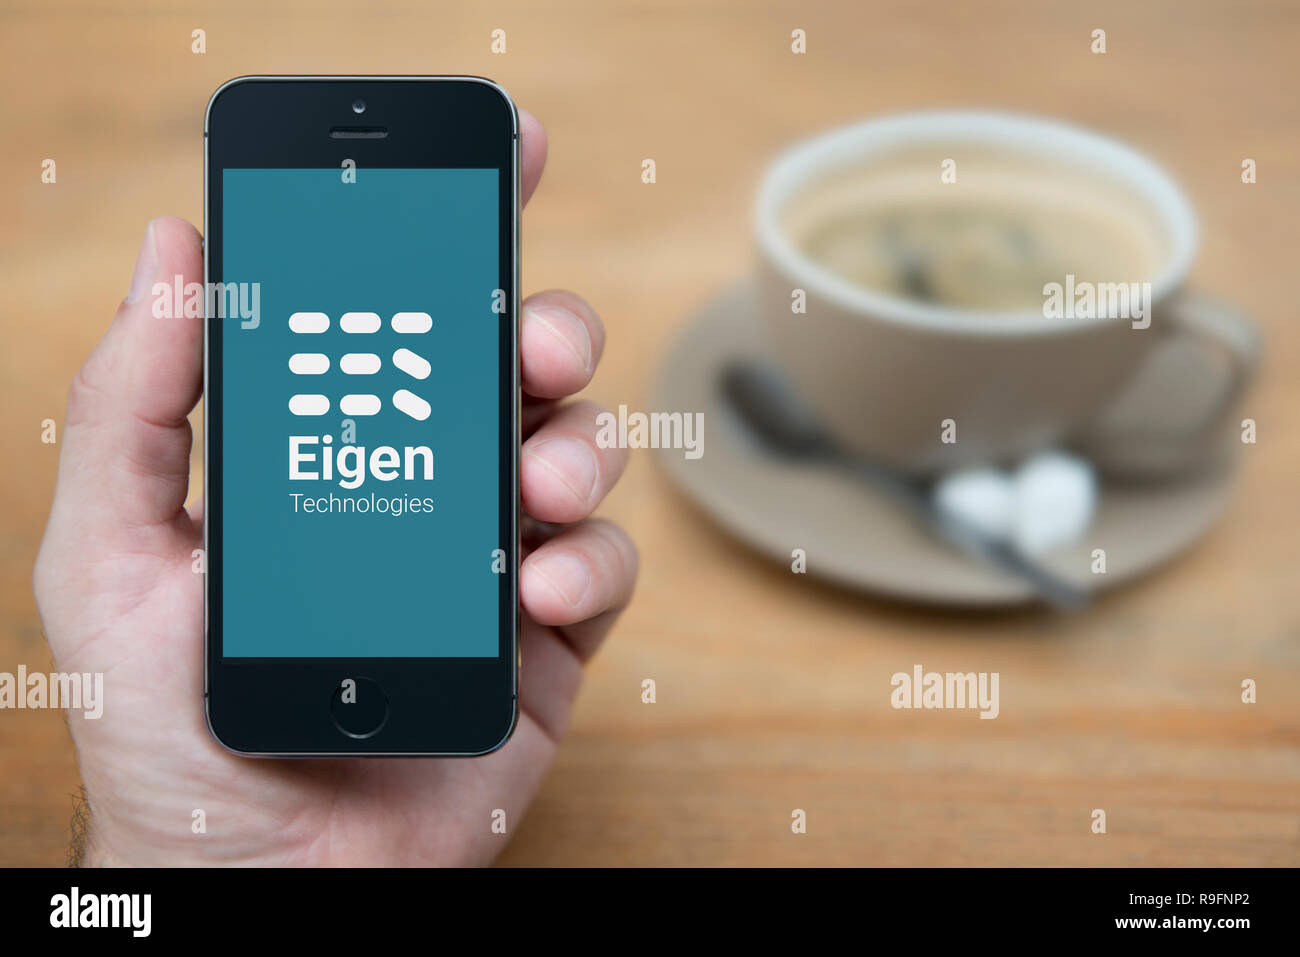 Un uomo guarda al suo iPhone che visualizza le tecnologie Eigen logo (solo uso editoriale). Foto Stock